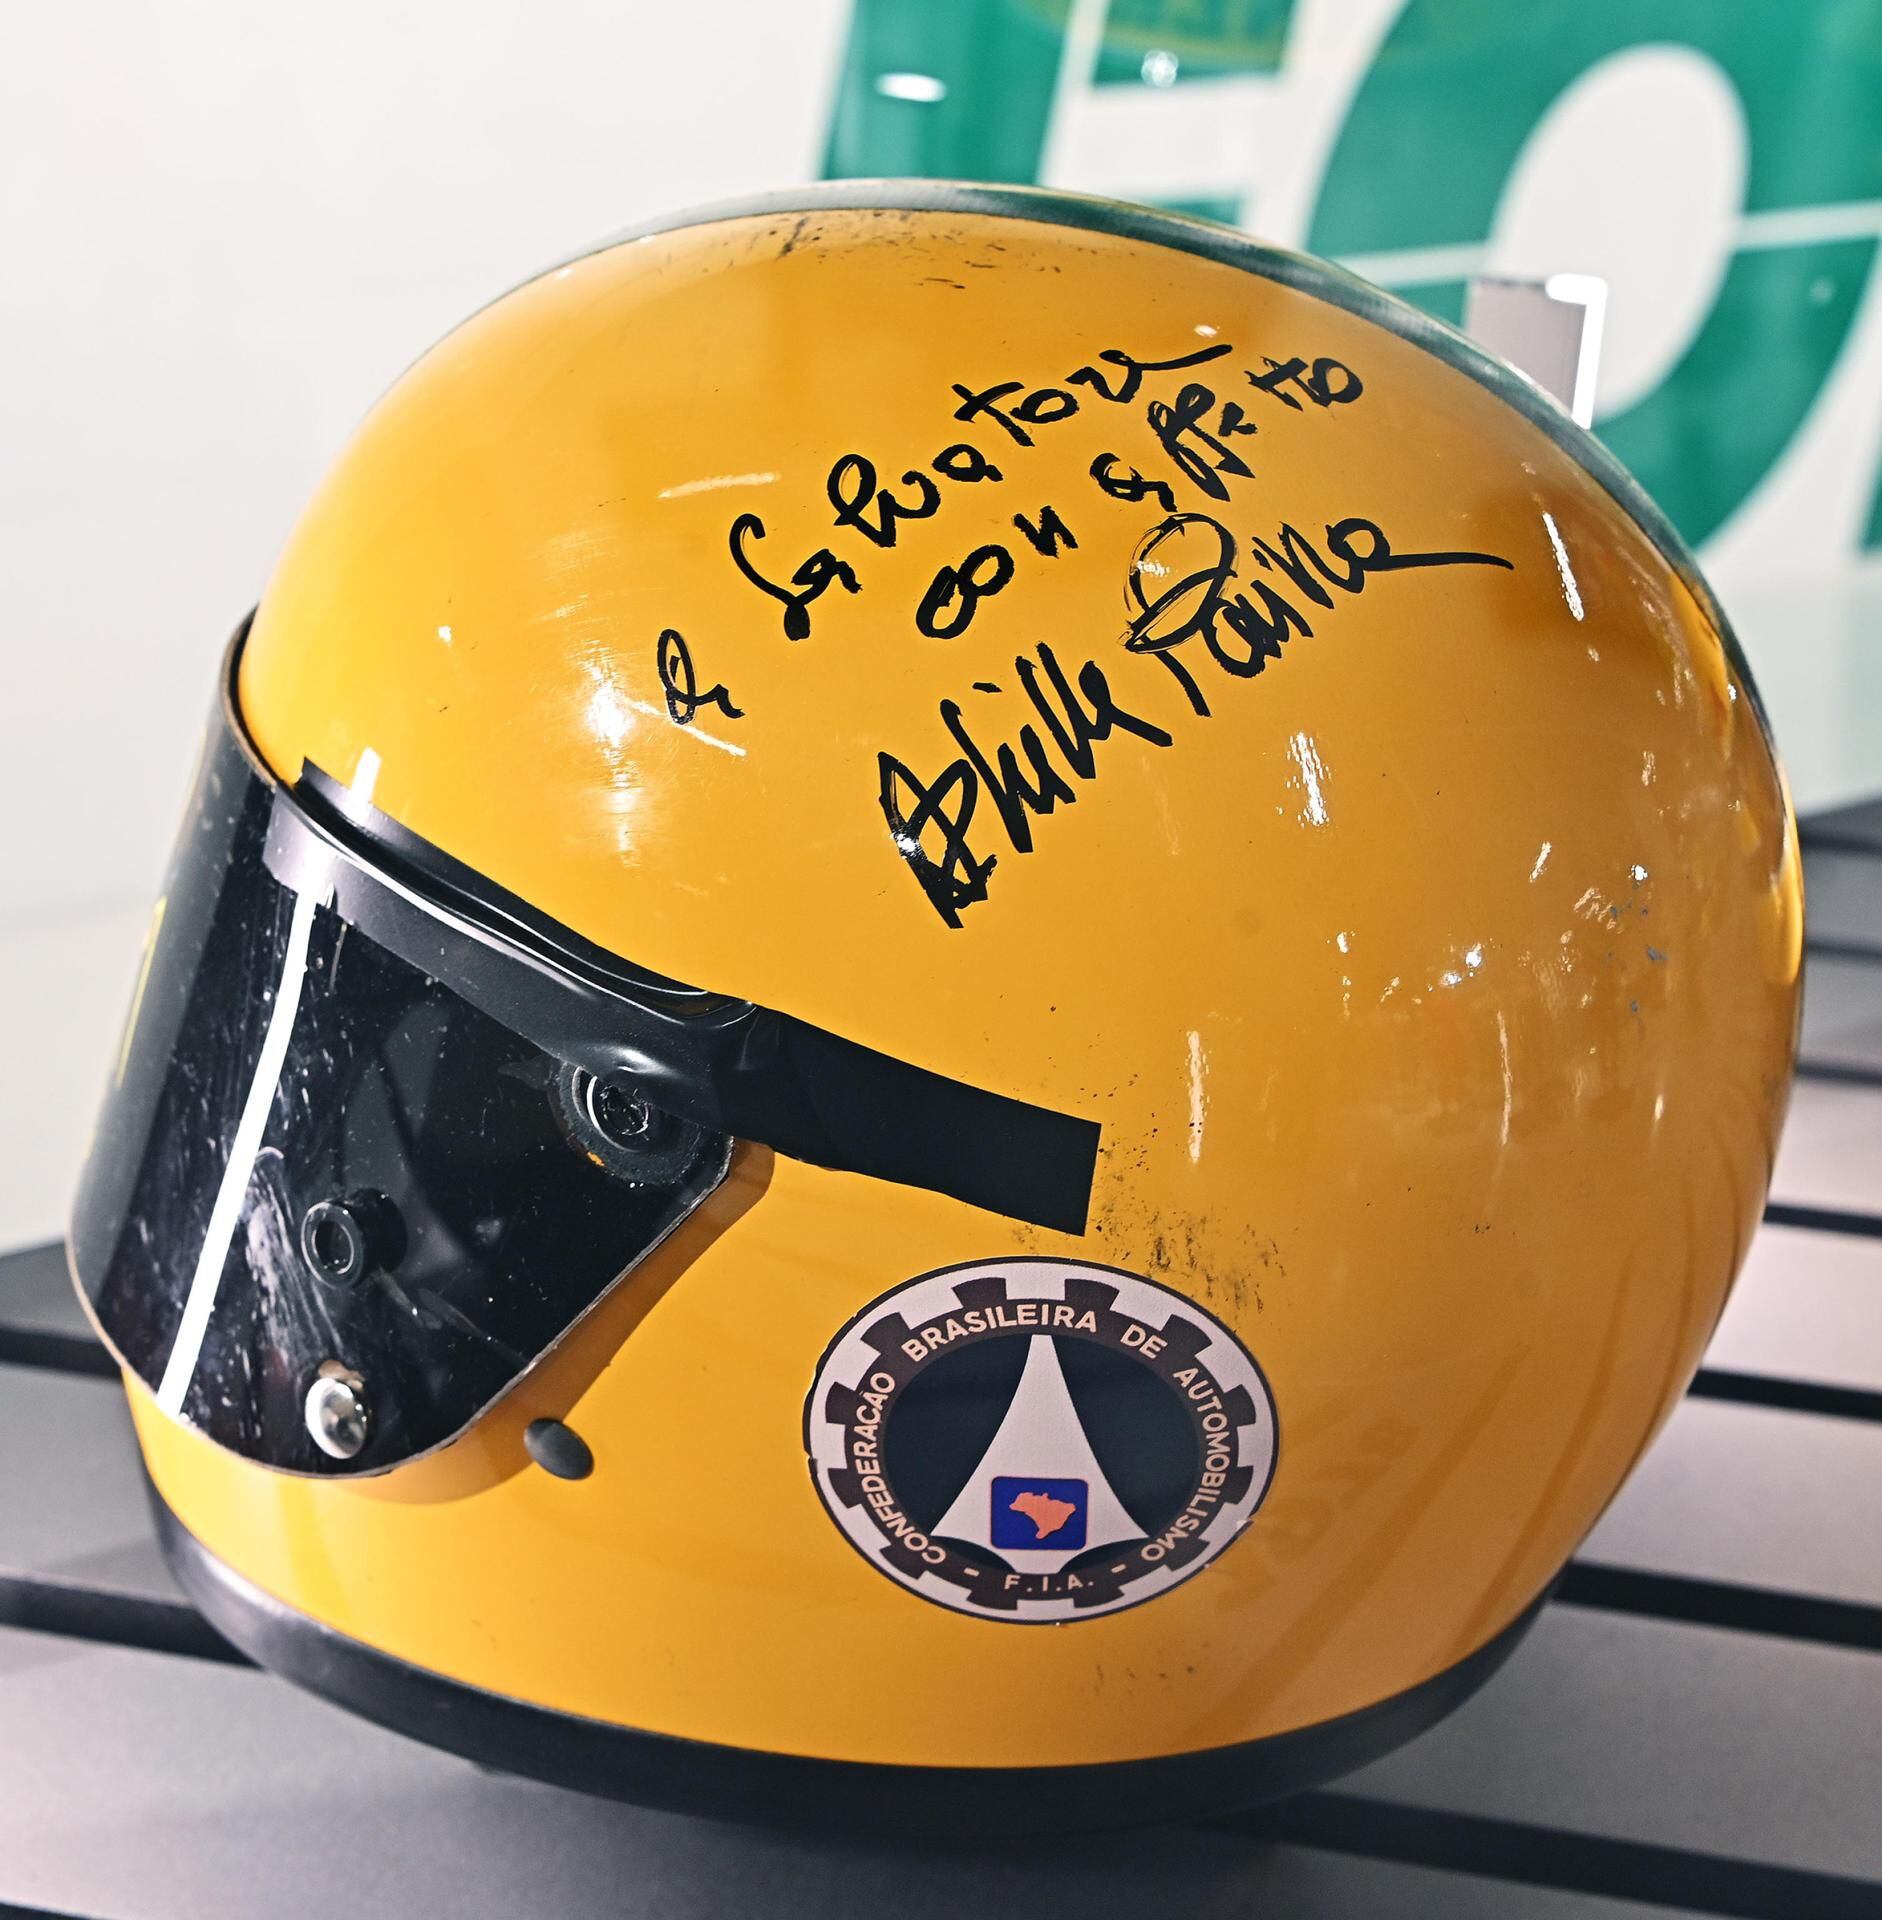 Un casco de carreras perteneciente al piloto brasileño Ayrton Senna se muestra durante la exposición 'Ayrton Senna Forever' en Turín, Italia.